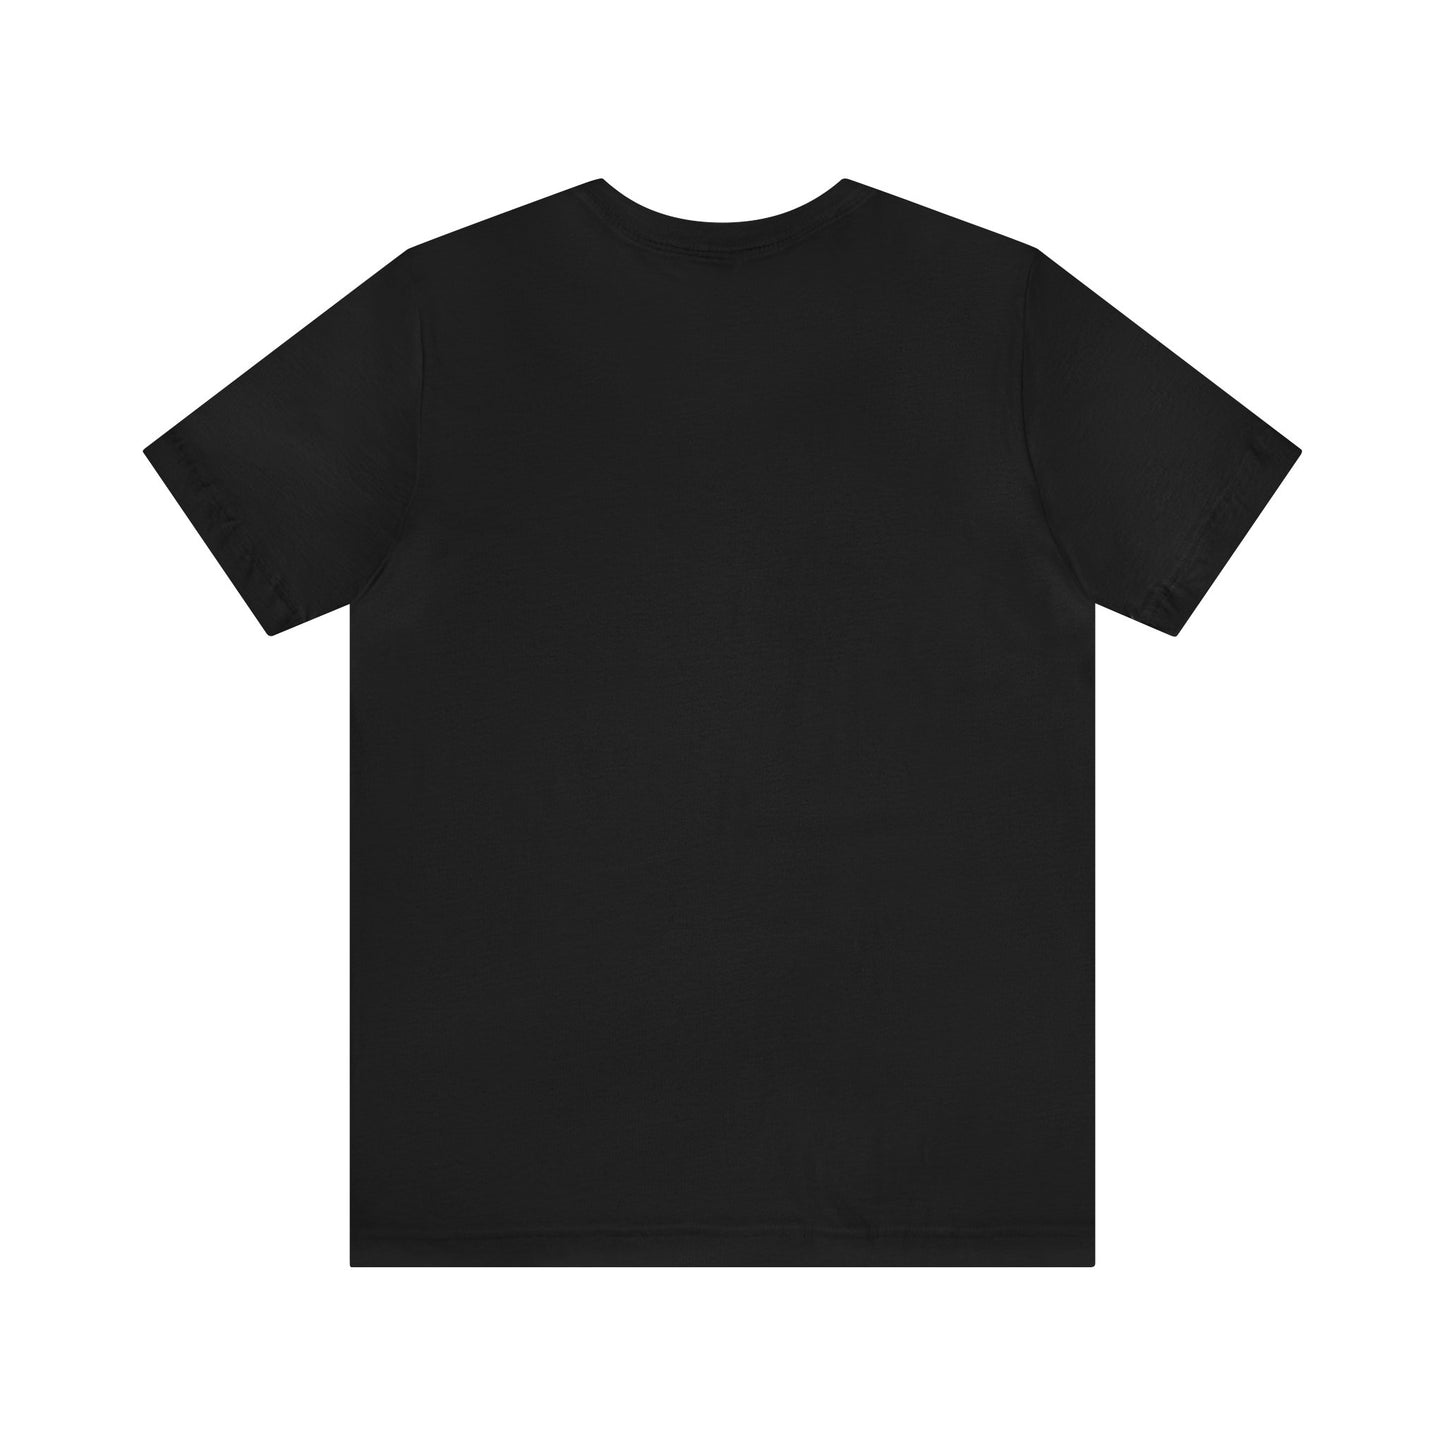 Black overisized skeleton T-shirt